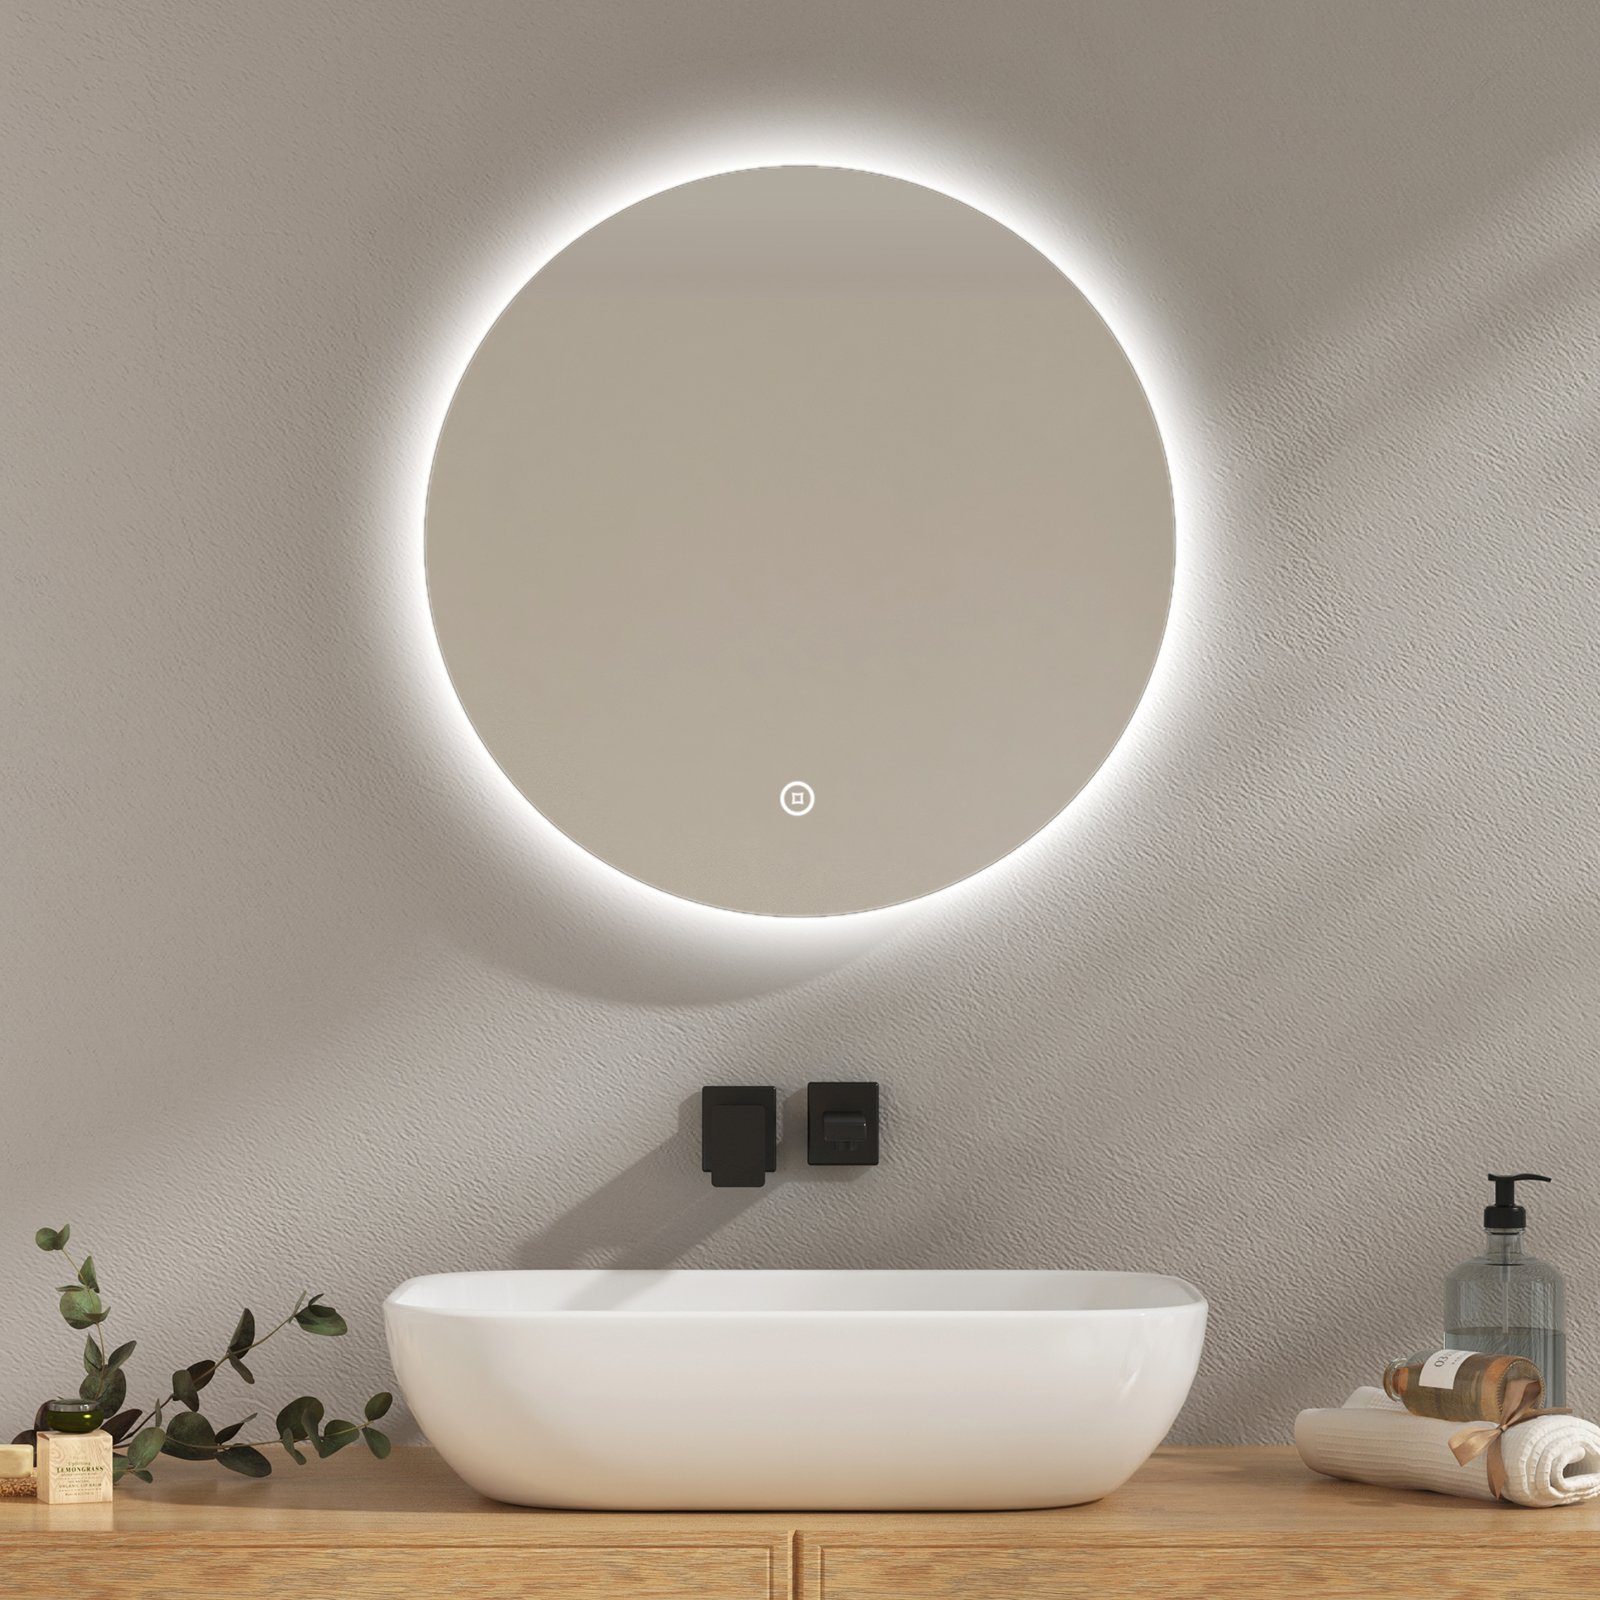 EMKE Spiegel Badspigel EMKE Runder Touchschalter Beleuchtung, mit mit Rahmenloser Spiegel Badspiegel